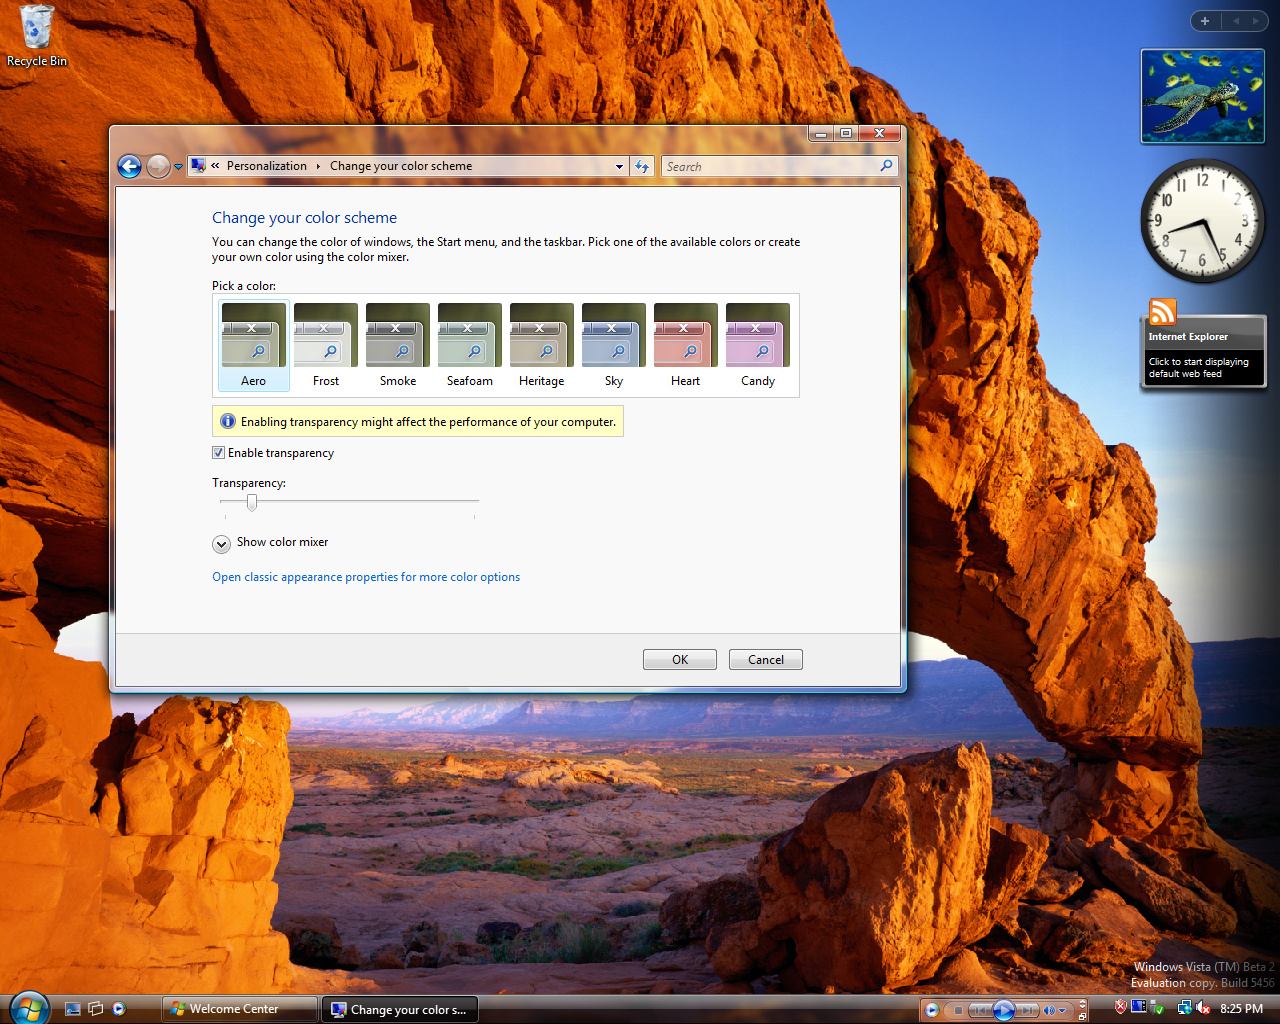 Windows Vista Build 5456 (Post-Beta 2) - Jetzt mit Performance-Warnung bei Transparenzen